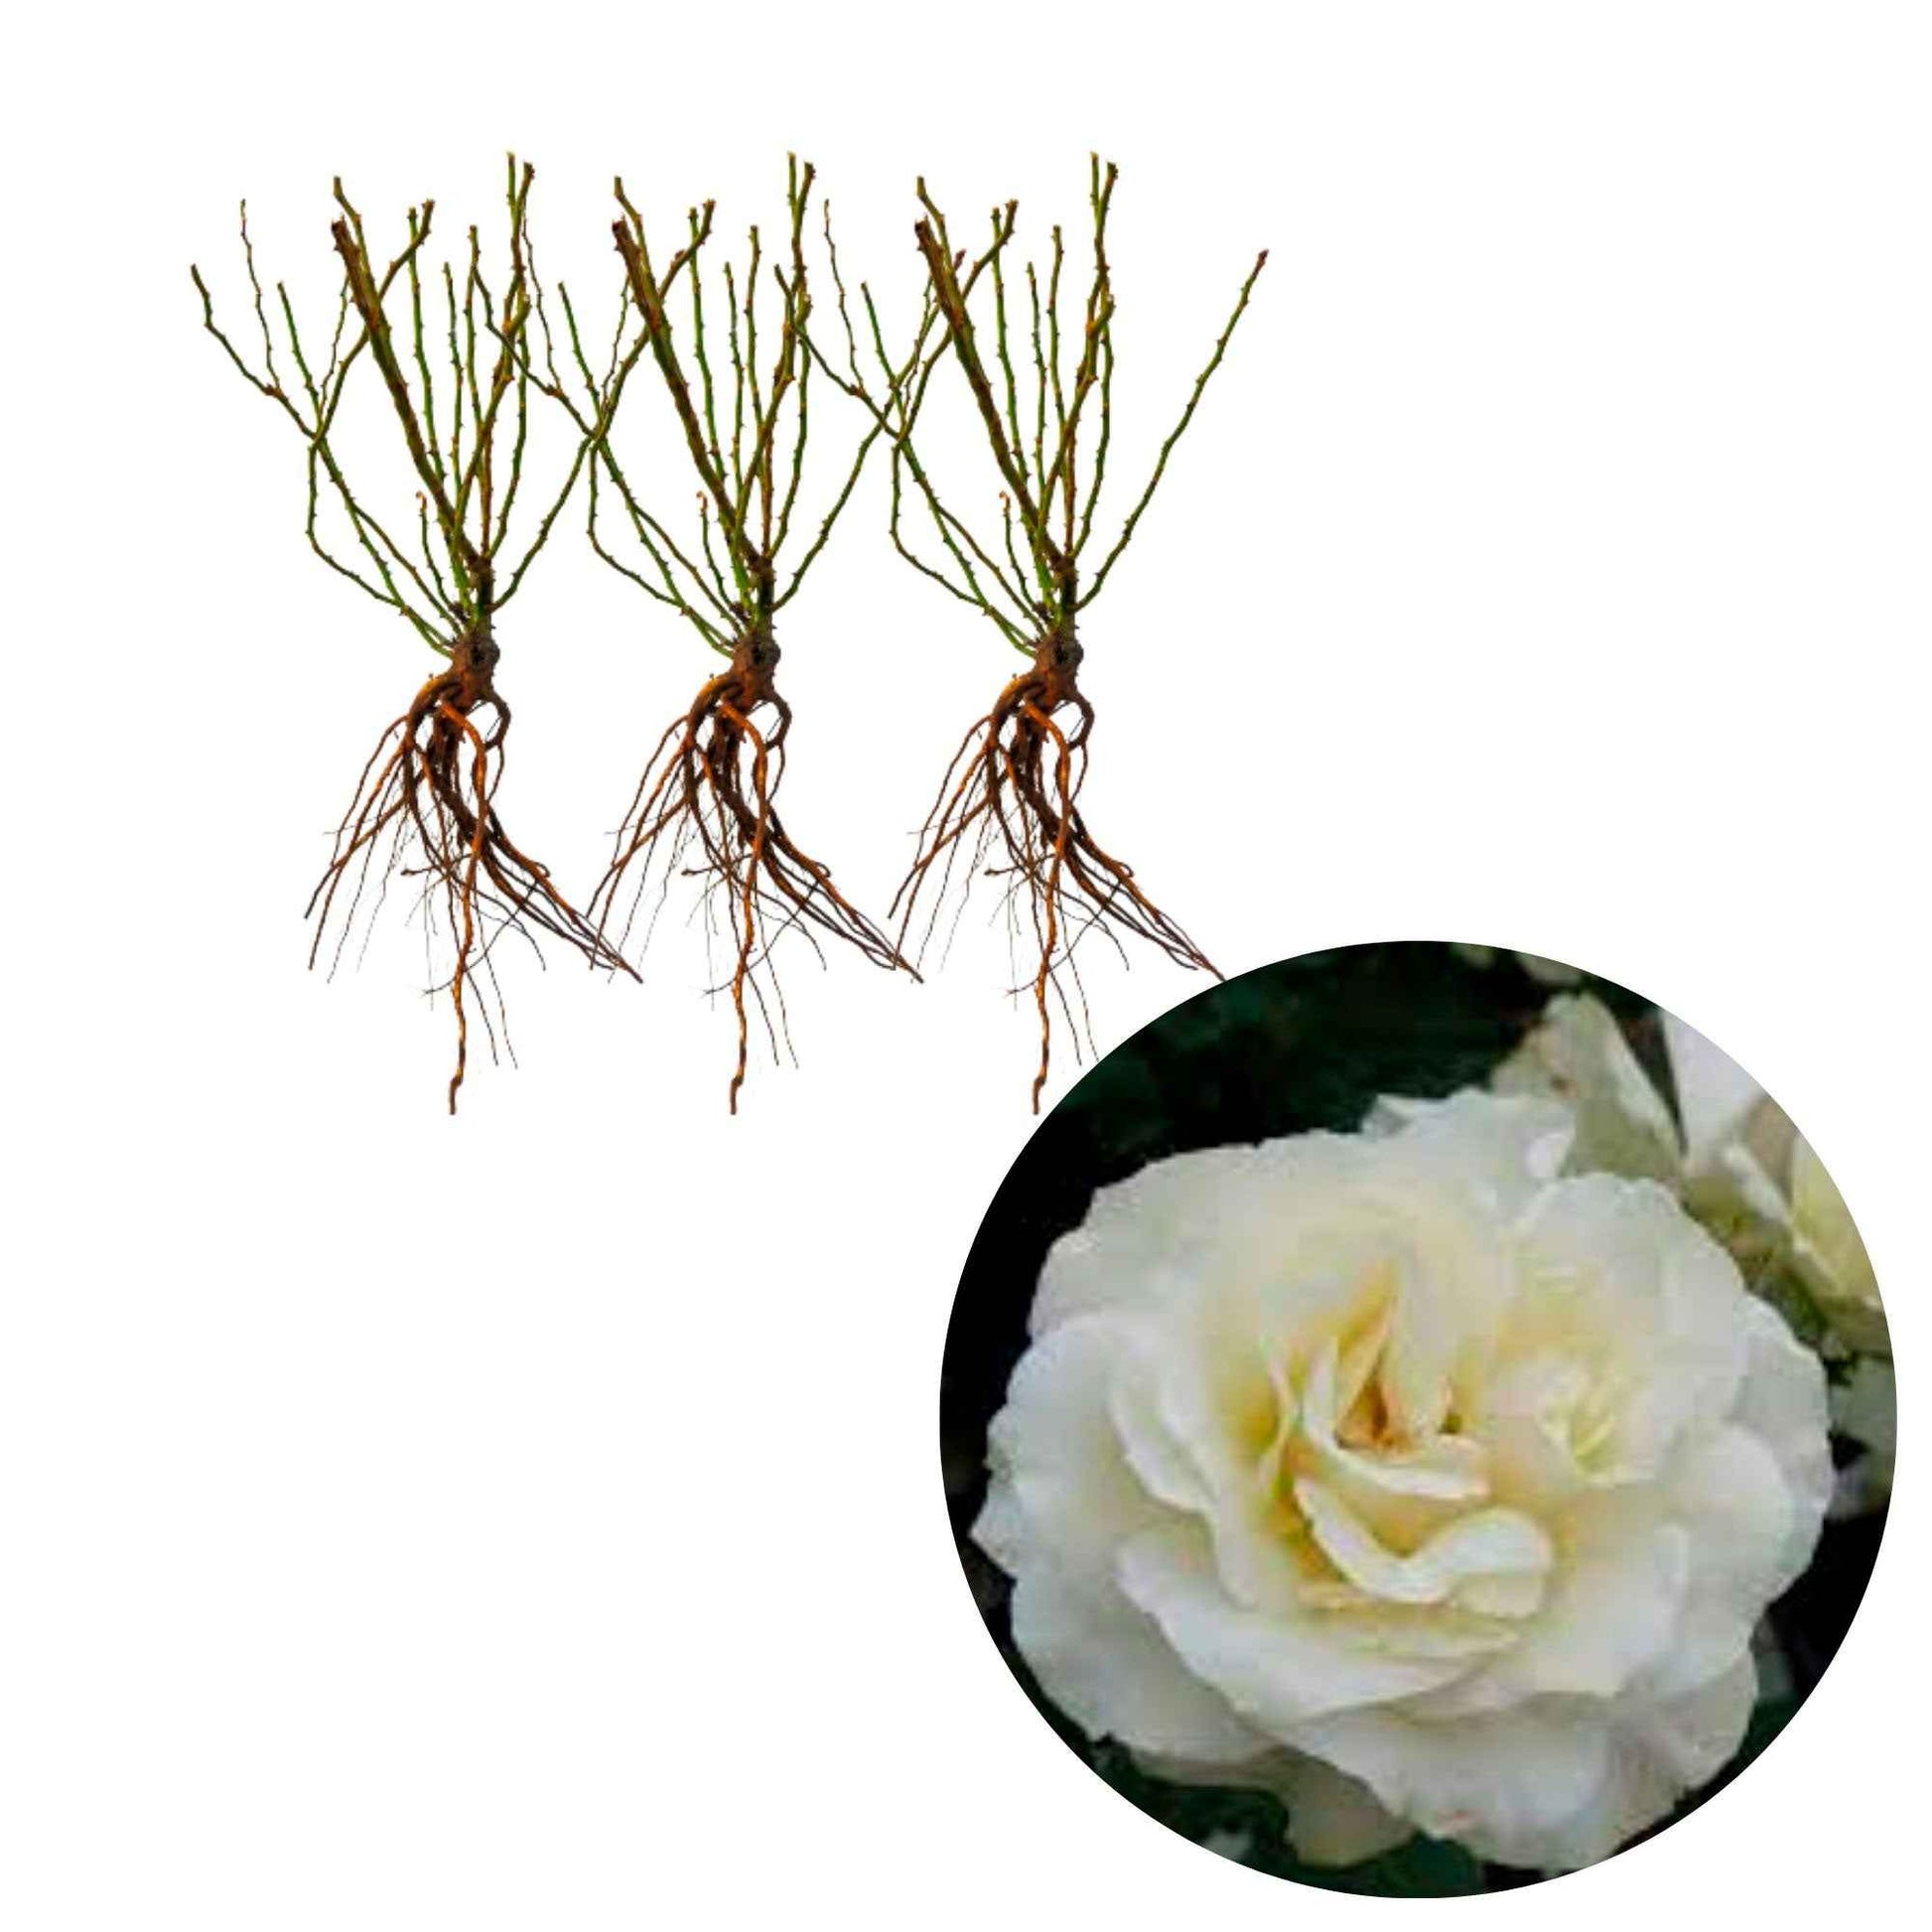 3x Rosen 'White Meilove'® Weiß  - Wurzelnackte Pflanzen - Winterhart - Pflanzeneigenschaften